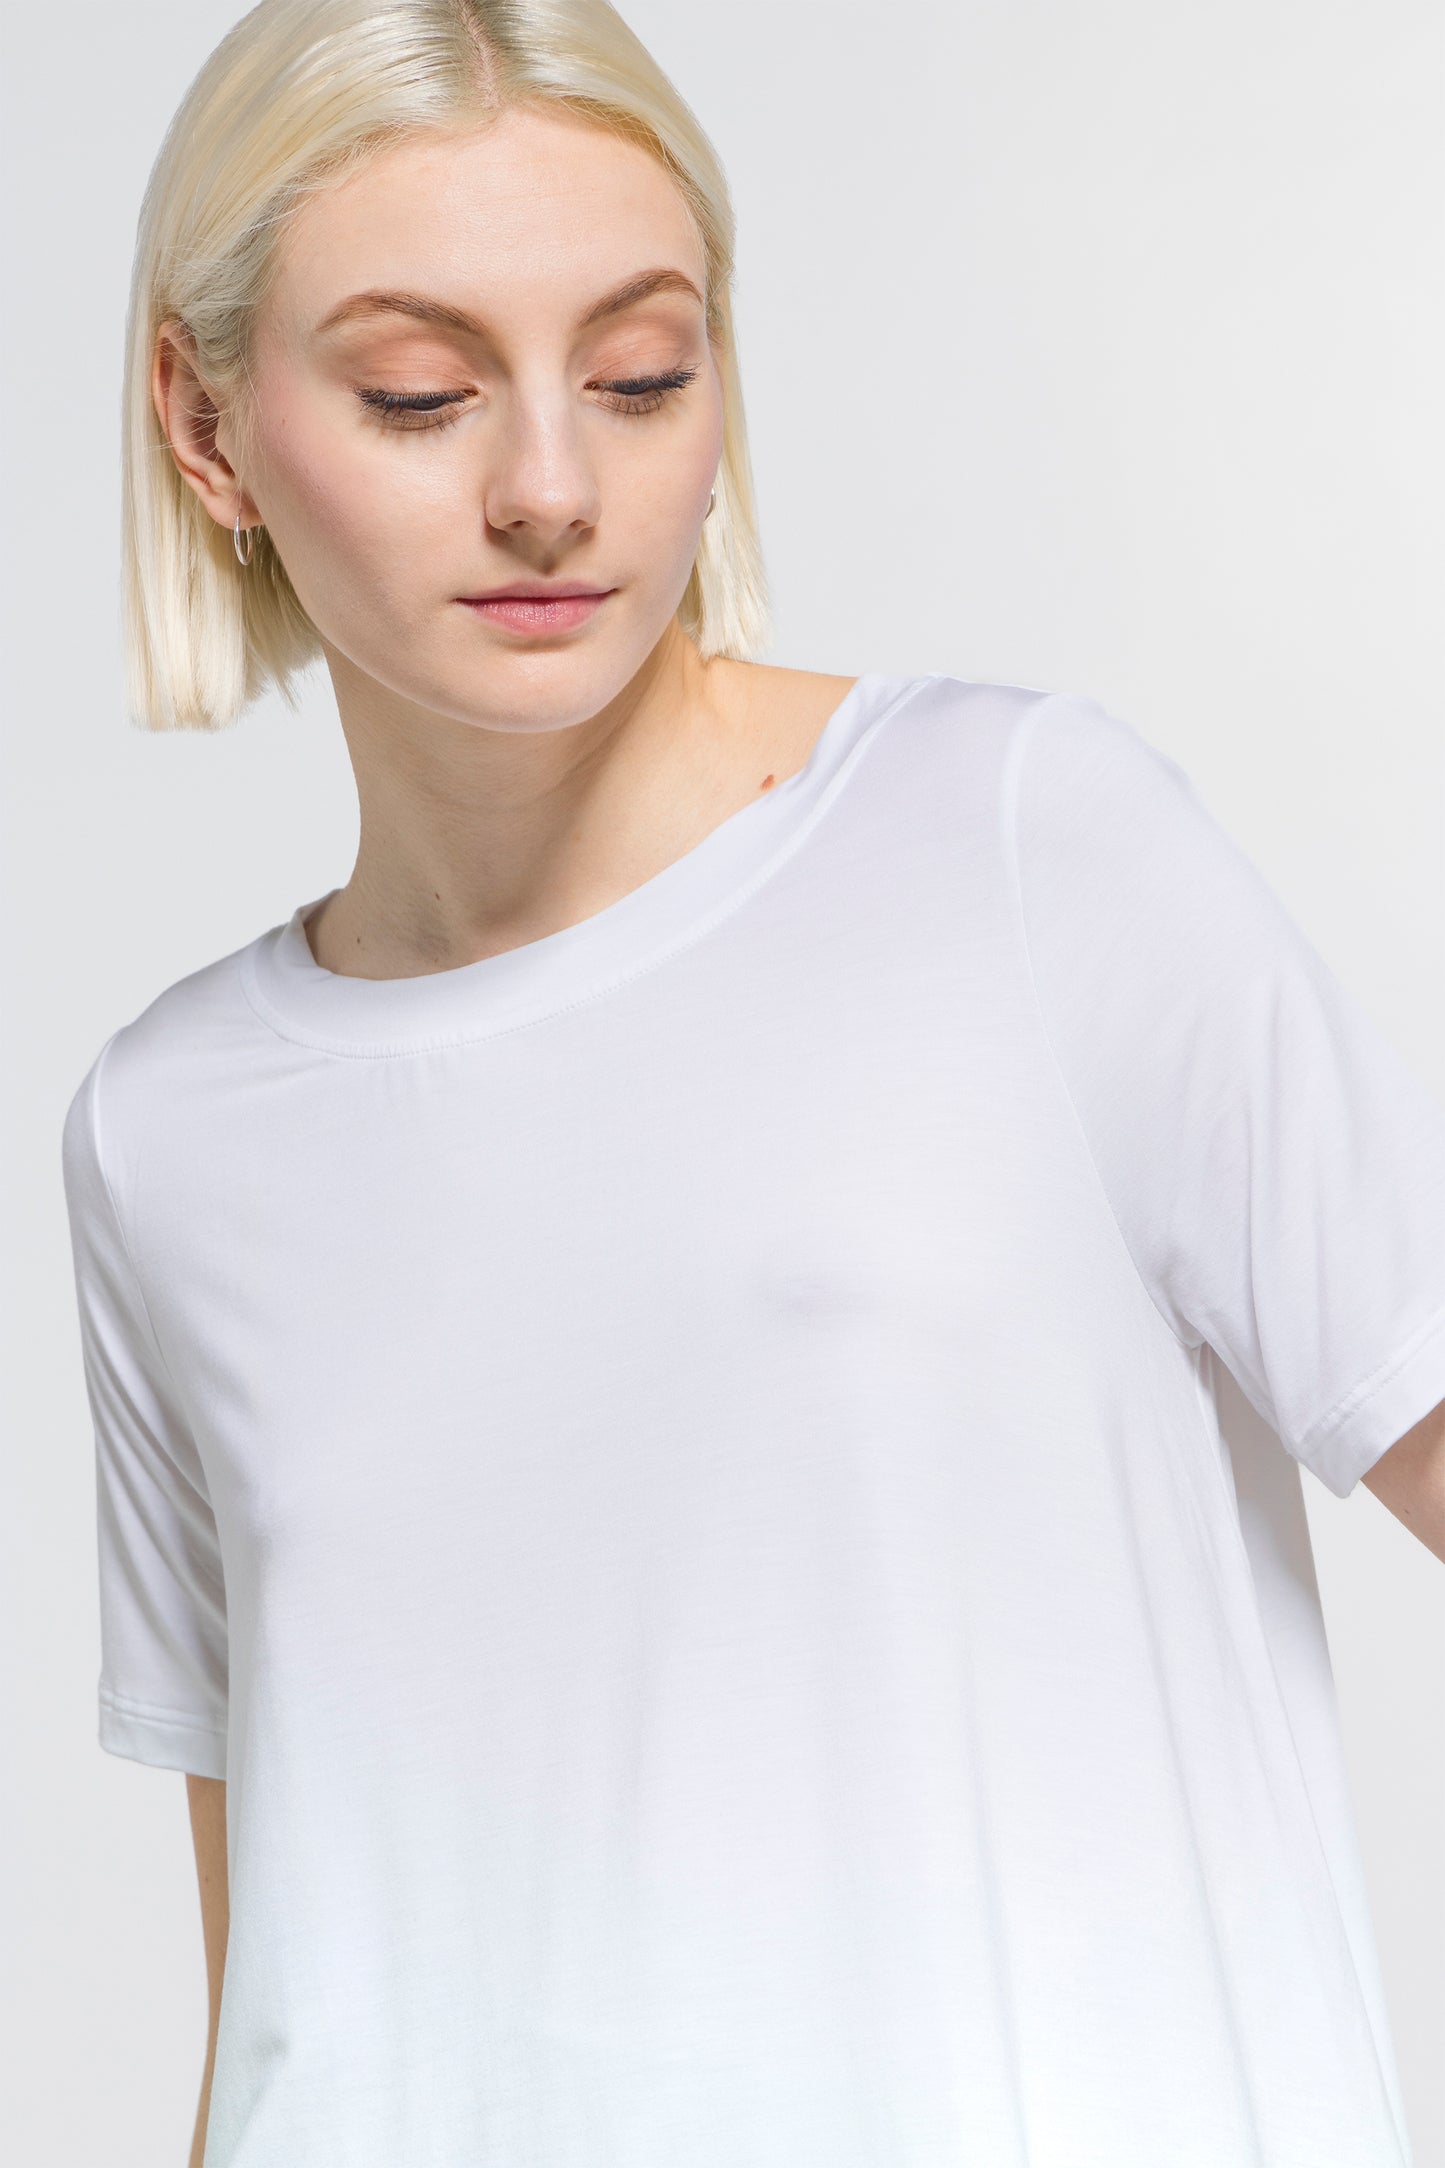 T-shirt Femme Modal 1335